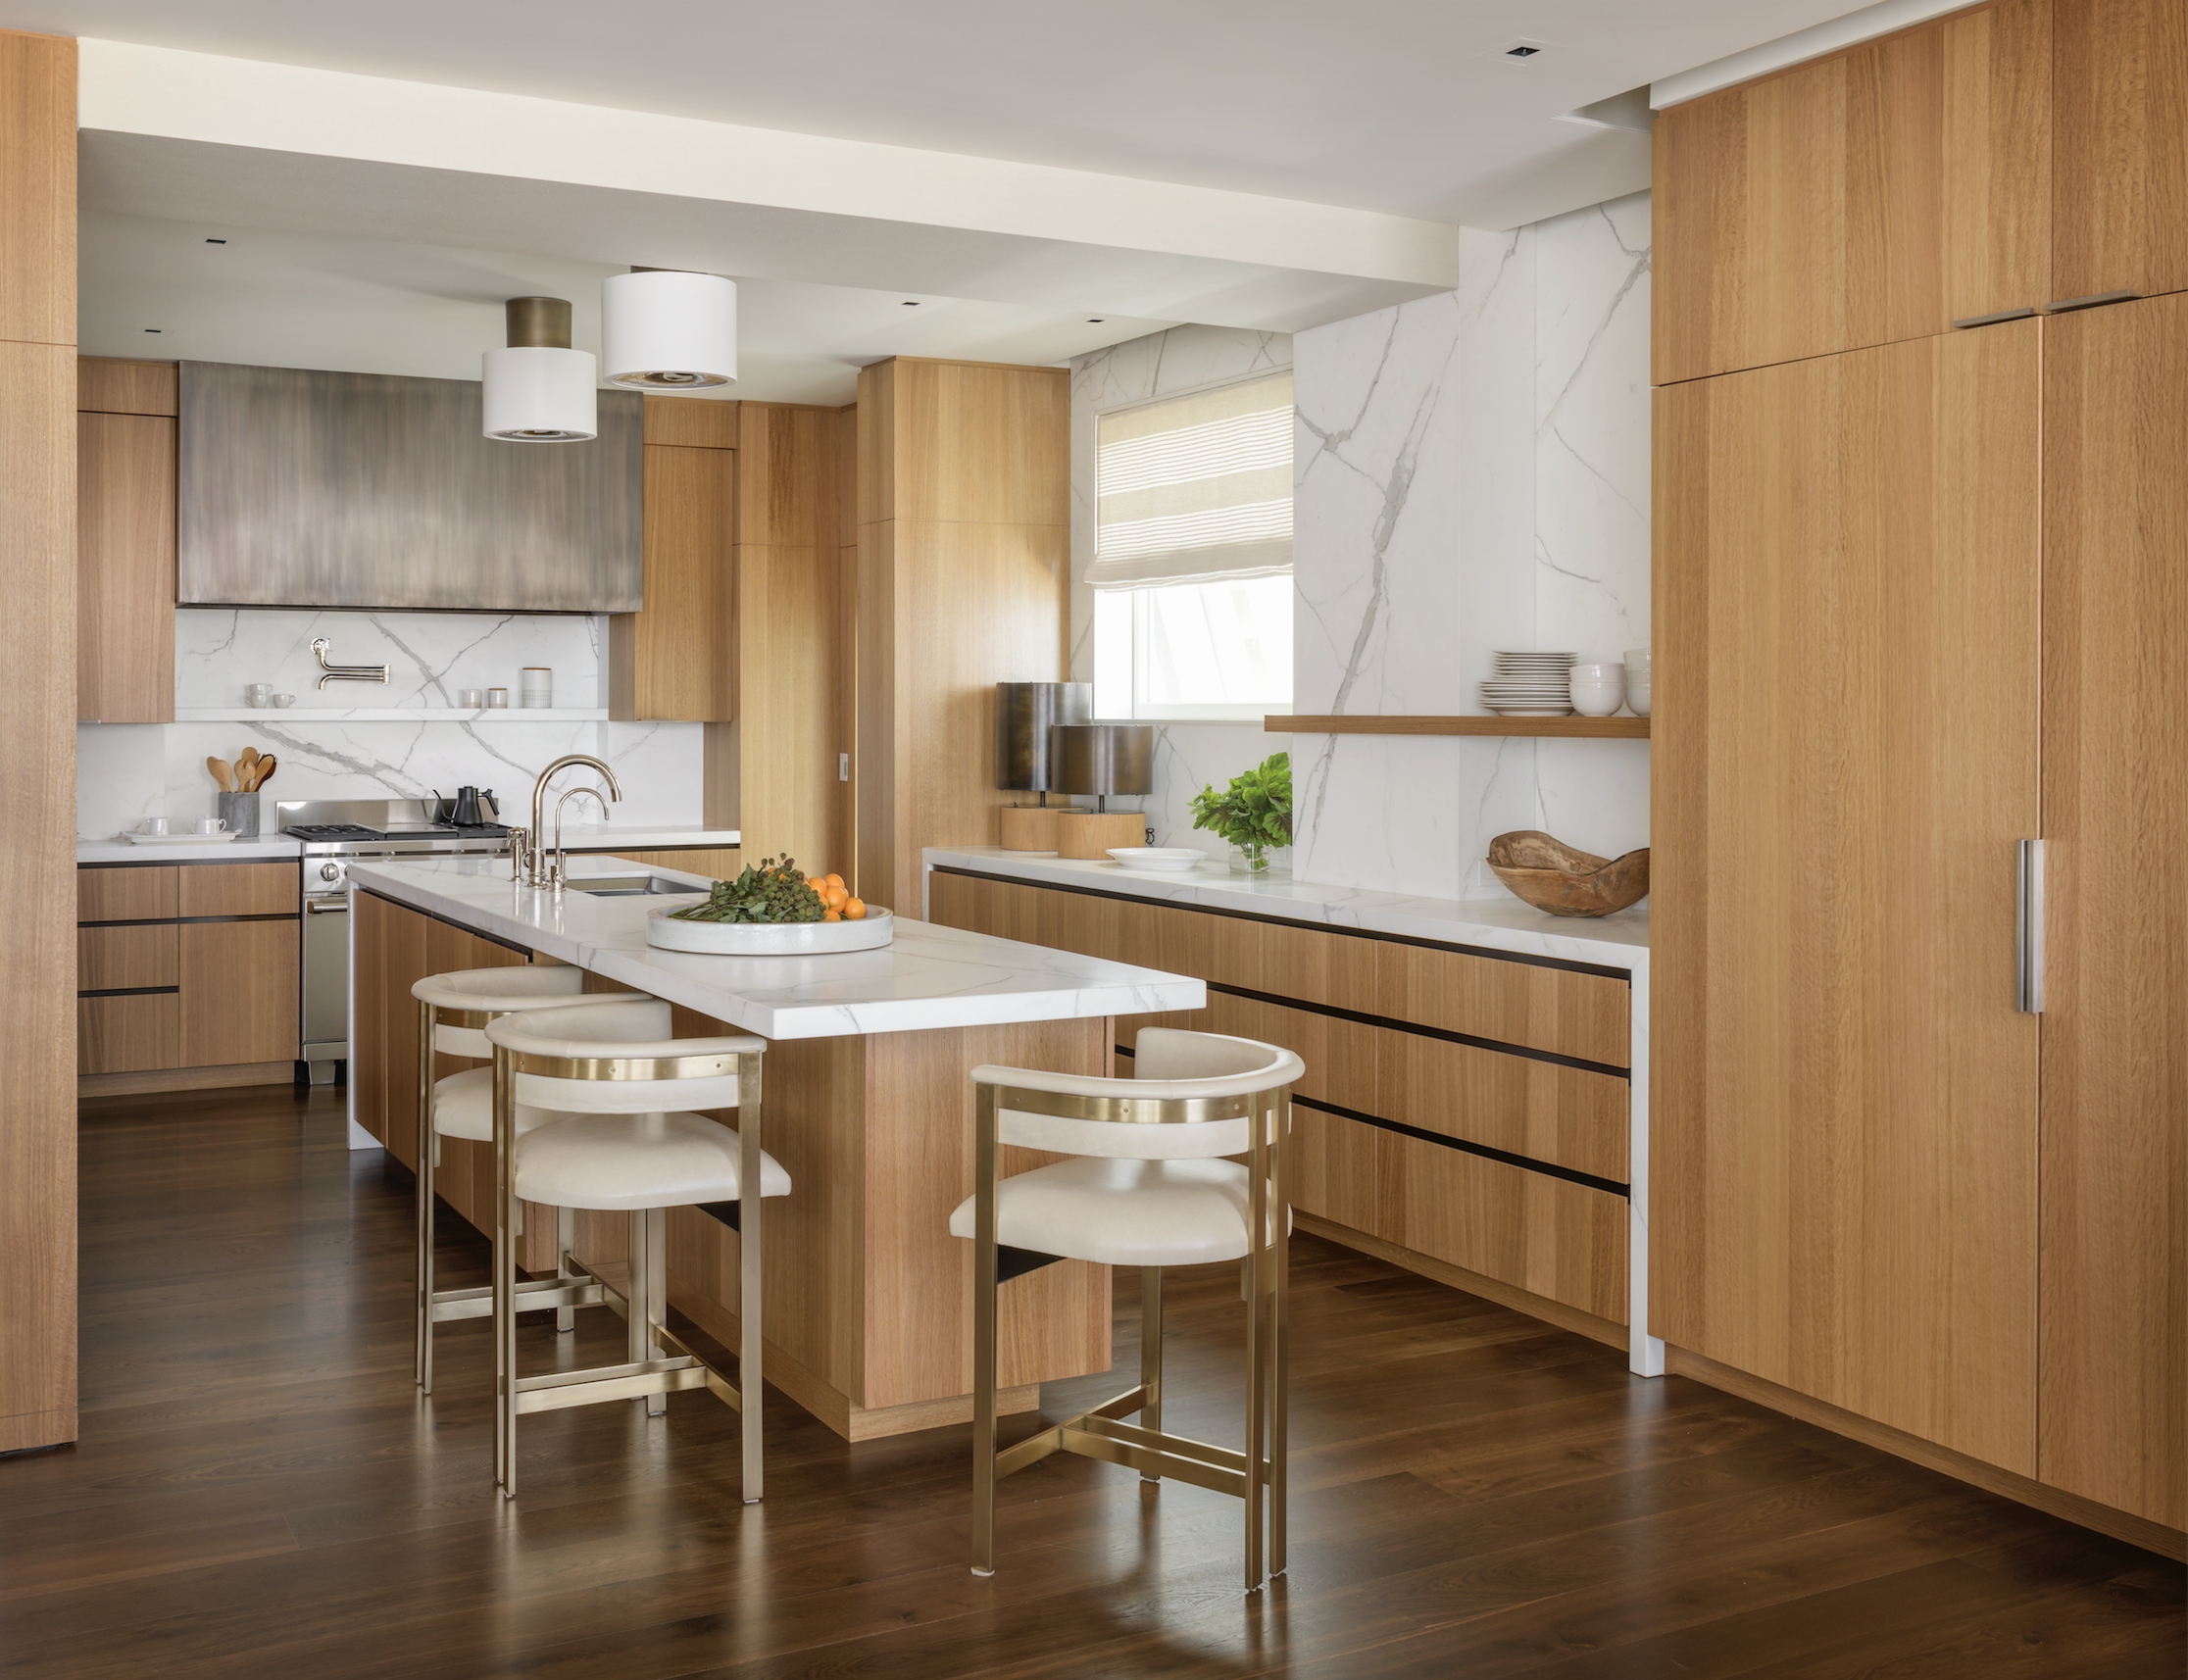 kitchen trends 2020 - designers share their kitchen